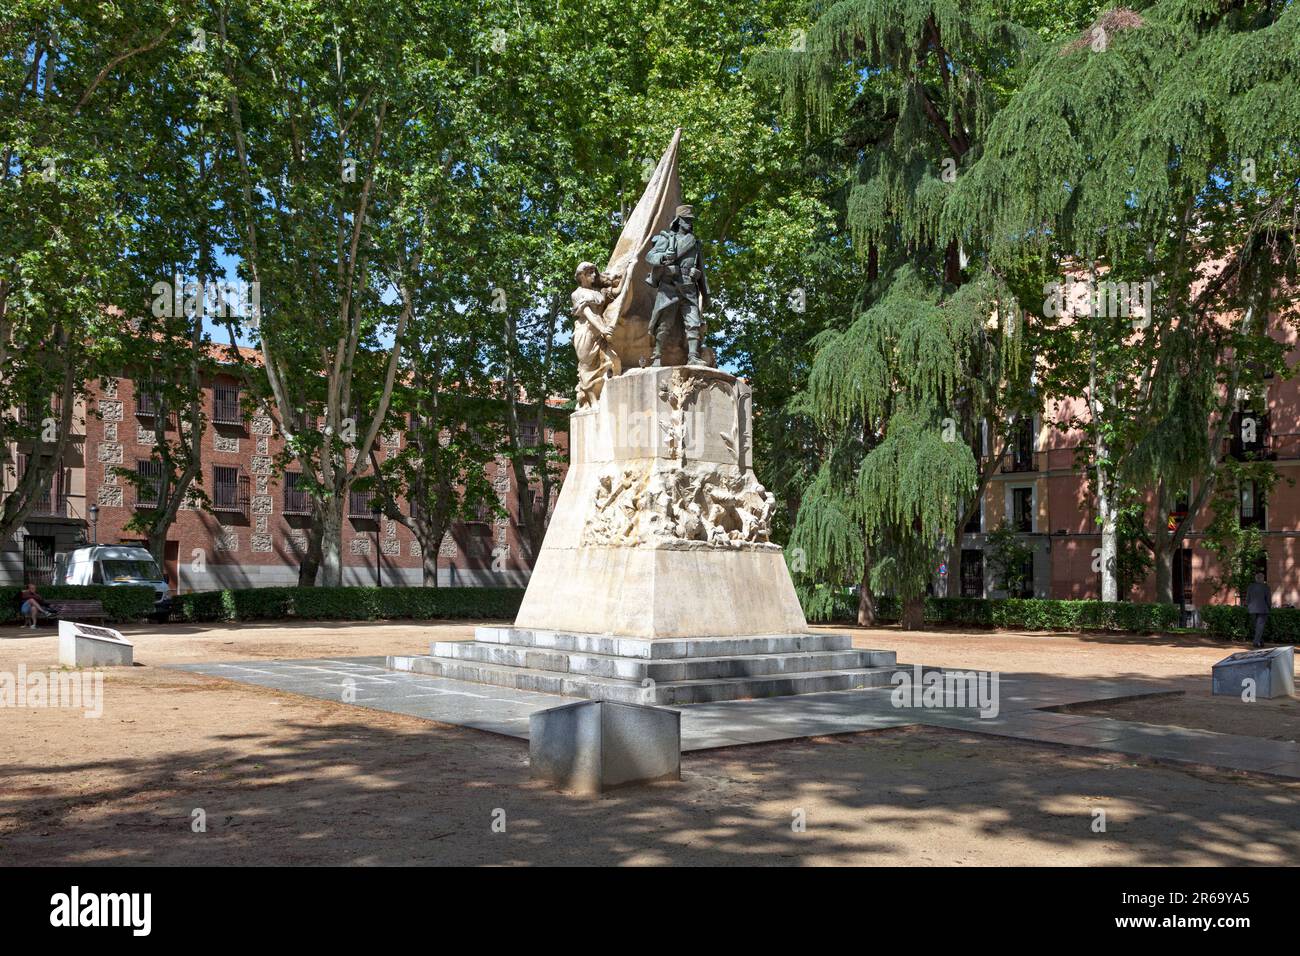 Madrid, Spain - June 06 2018: Monumento al Cabo Noval in the Jardines del cabo Noval opposite the Plaza de Oriente. Stock Photo